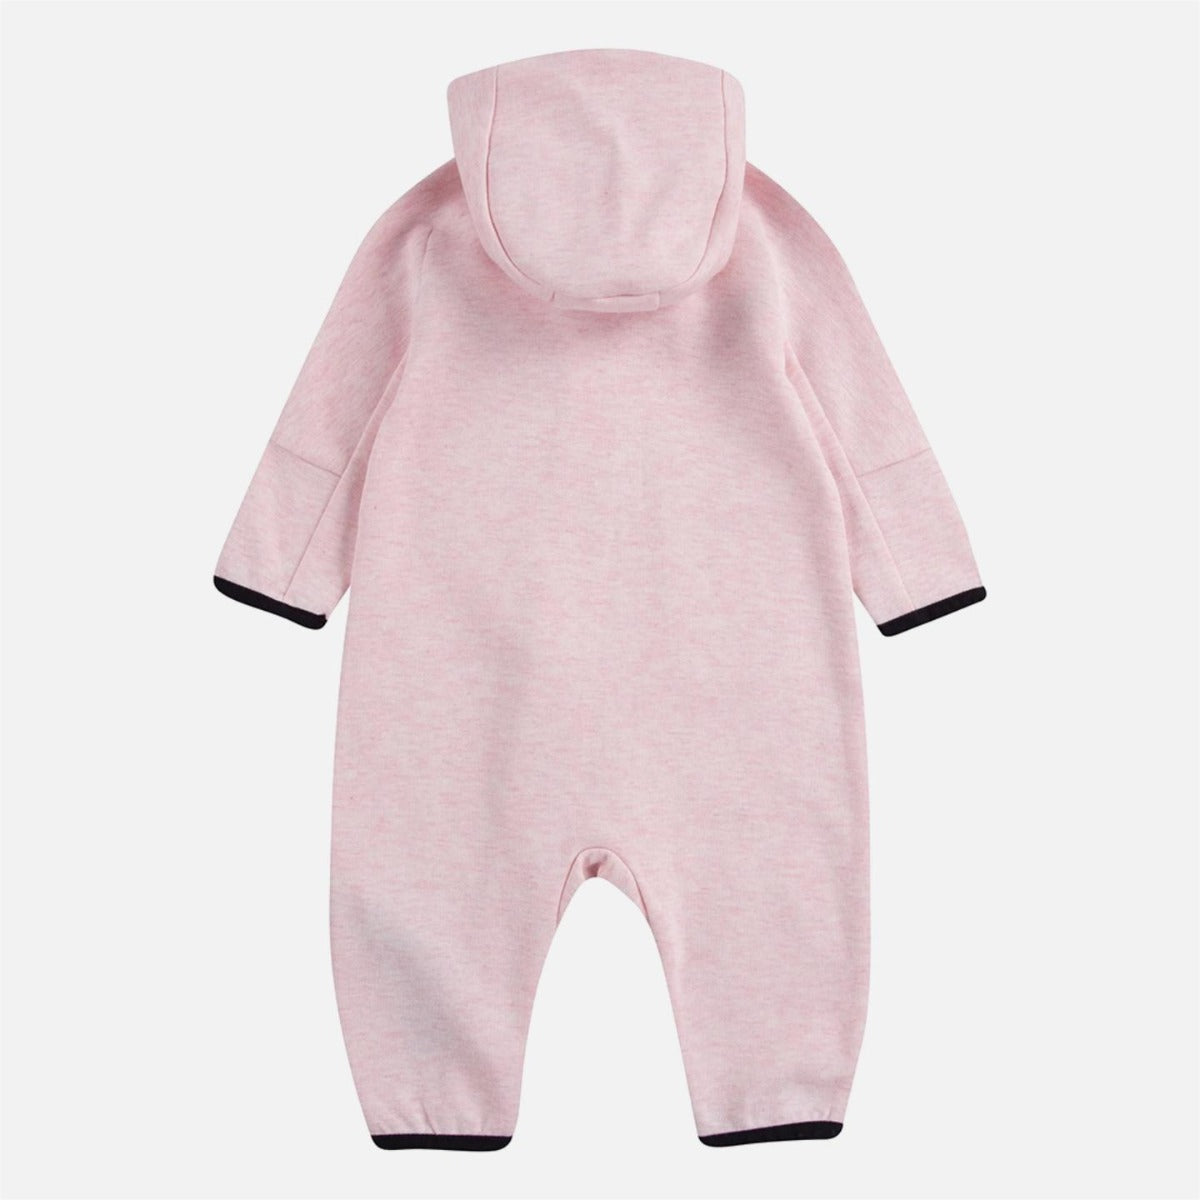 Nike Sportswear Tech Fleece Baby Onesie - Pink/Black